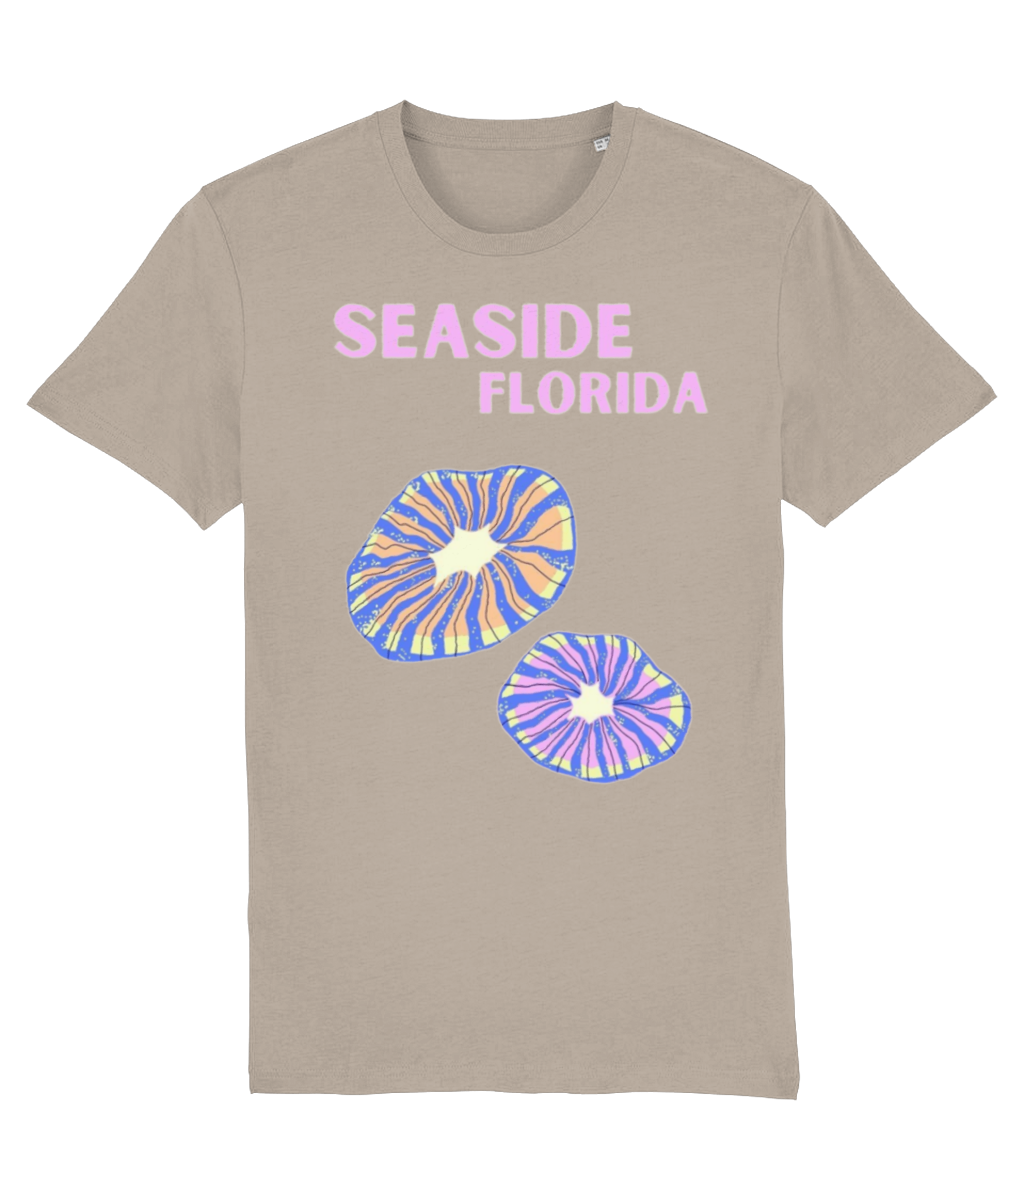 SEASIDE FLORIDA SHIRT